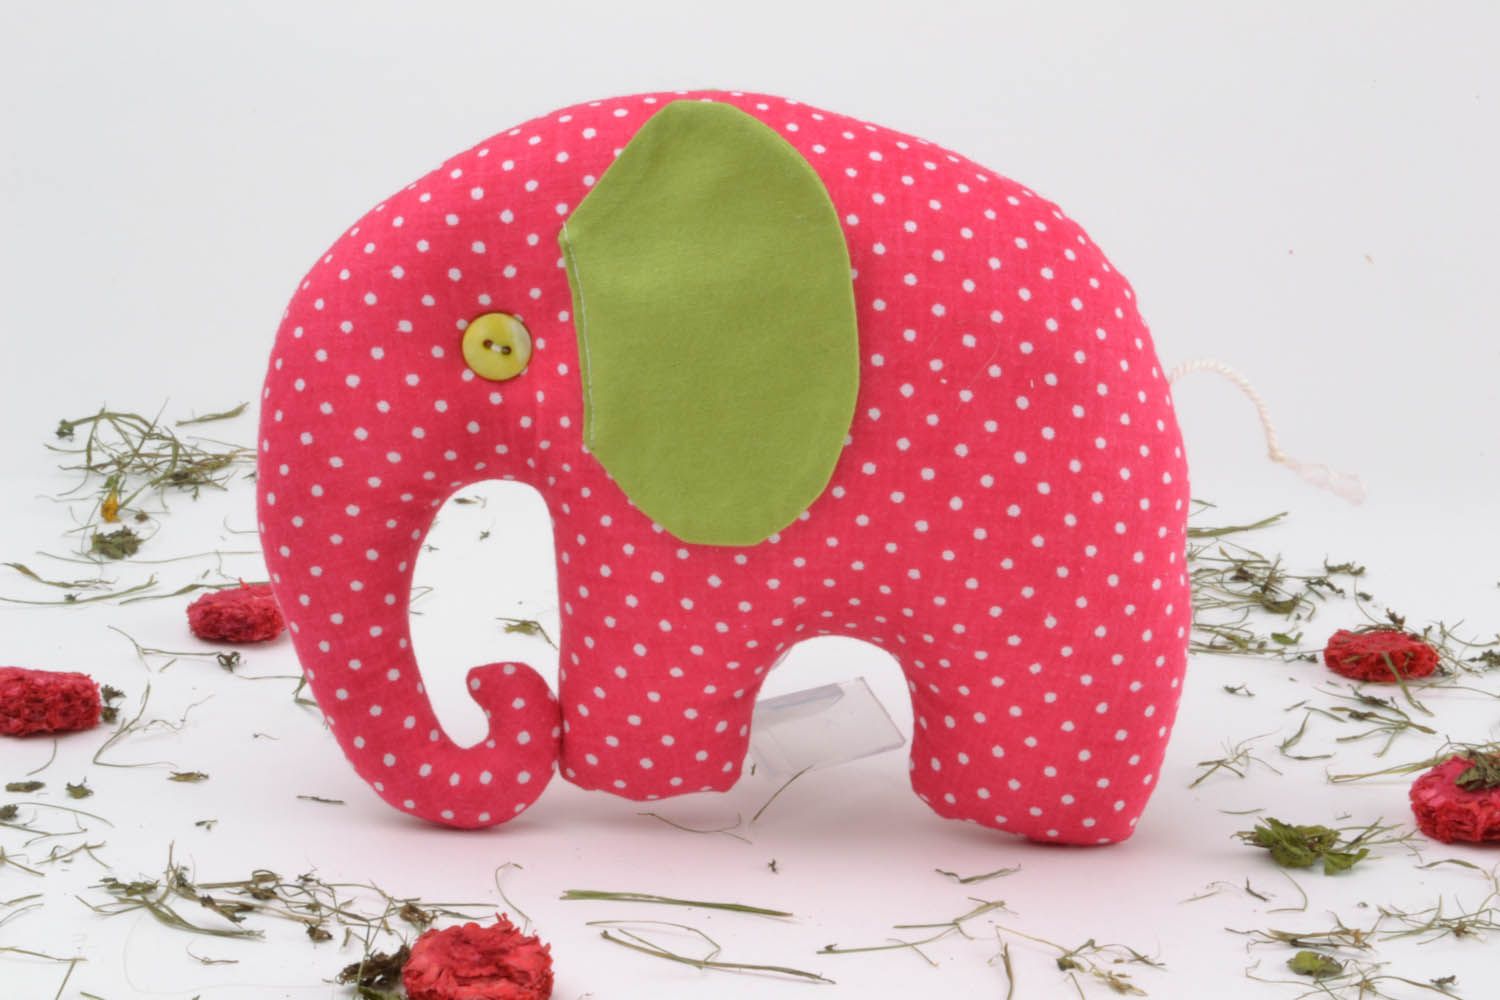 Soft toy Polka Dot Elephant photo 1